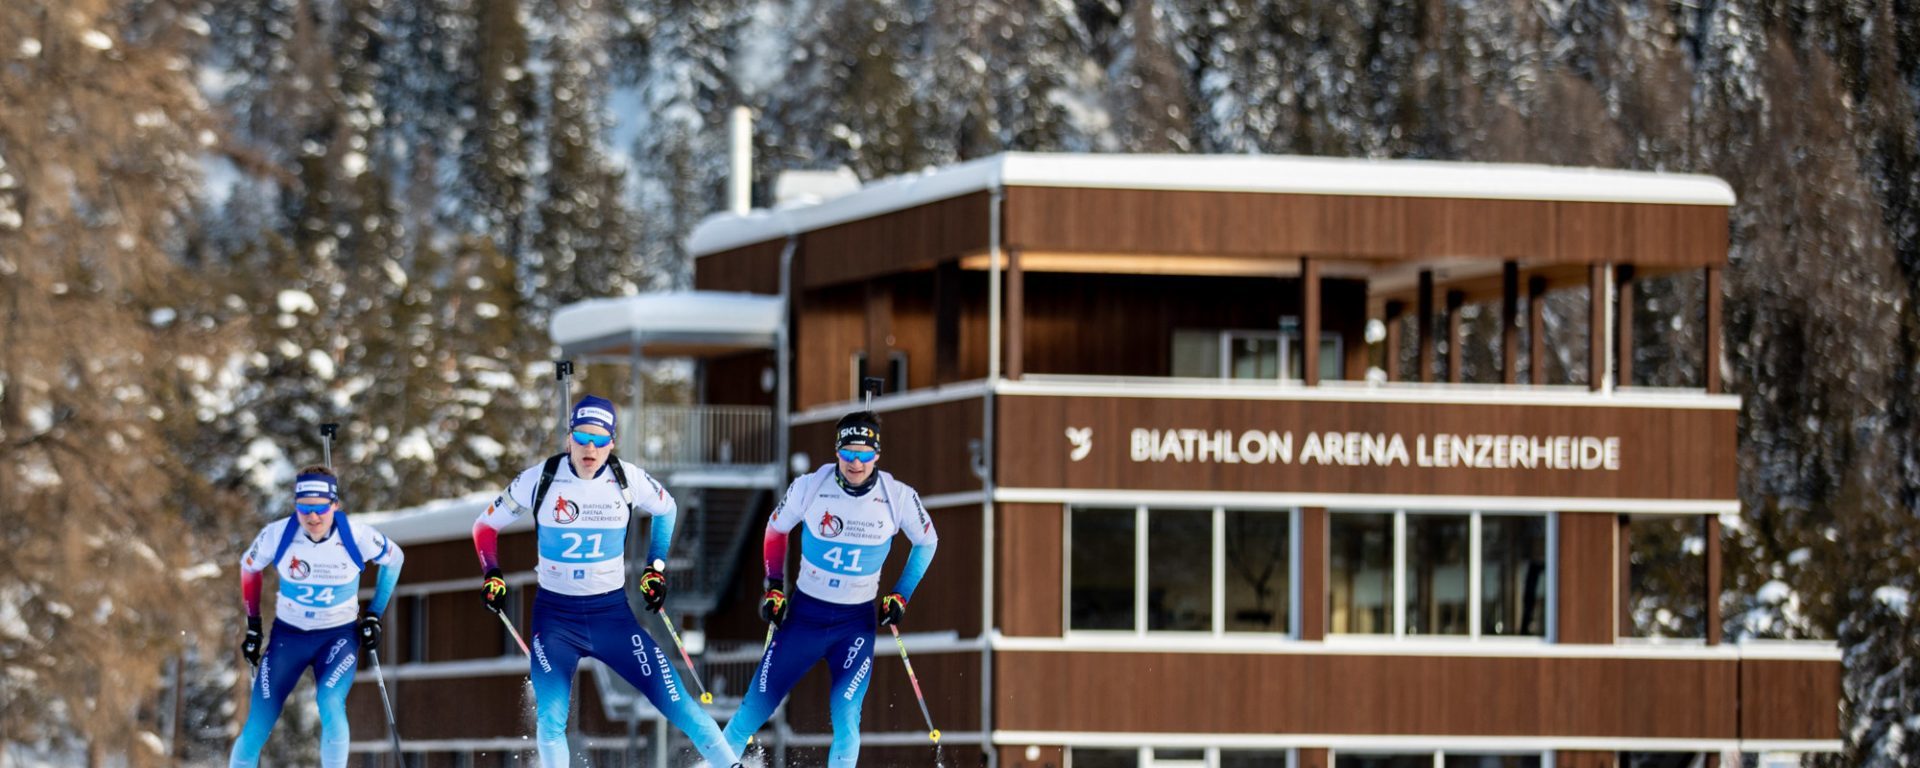 Biathlon Gebäude und Läufer